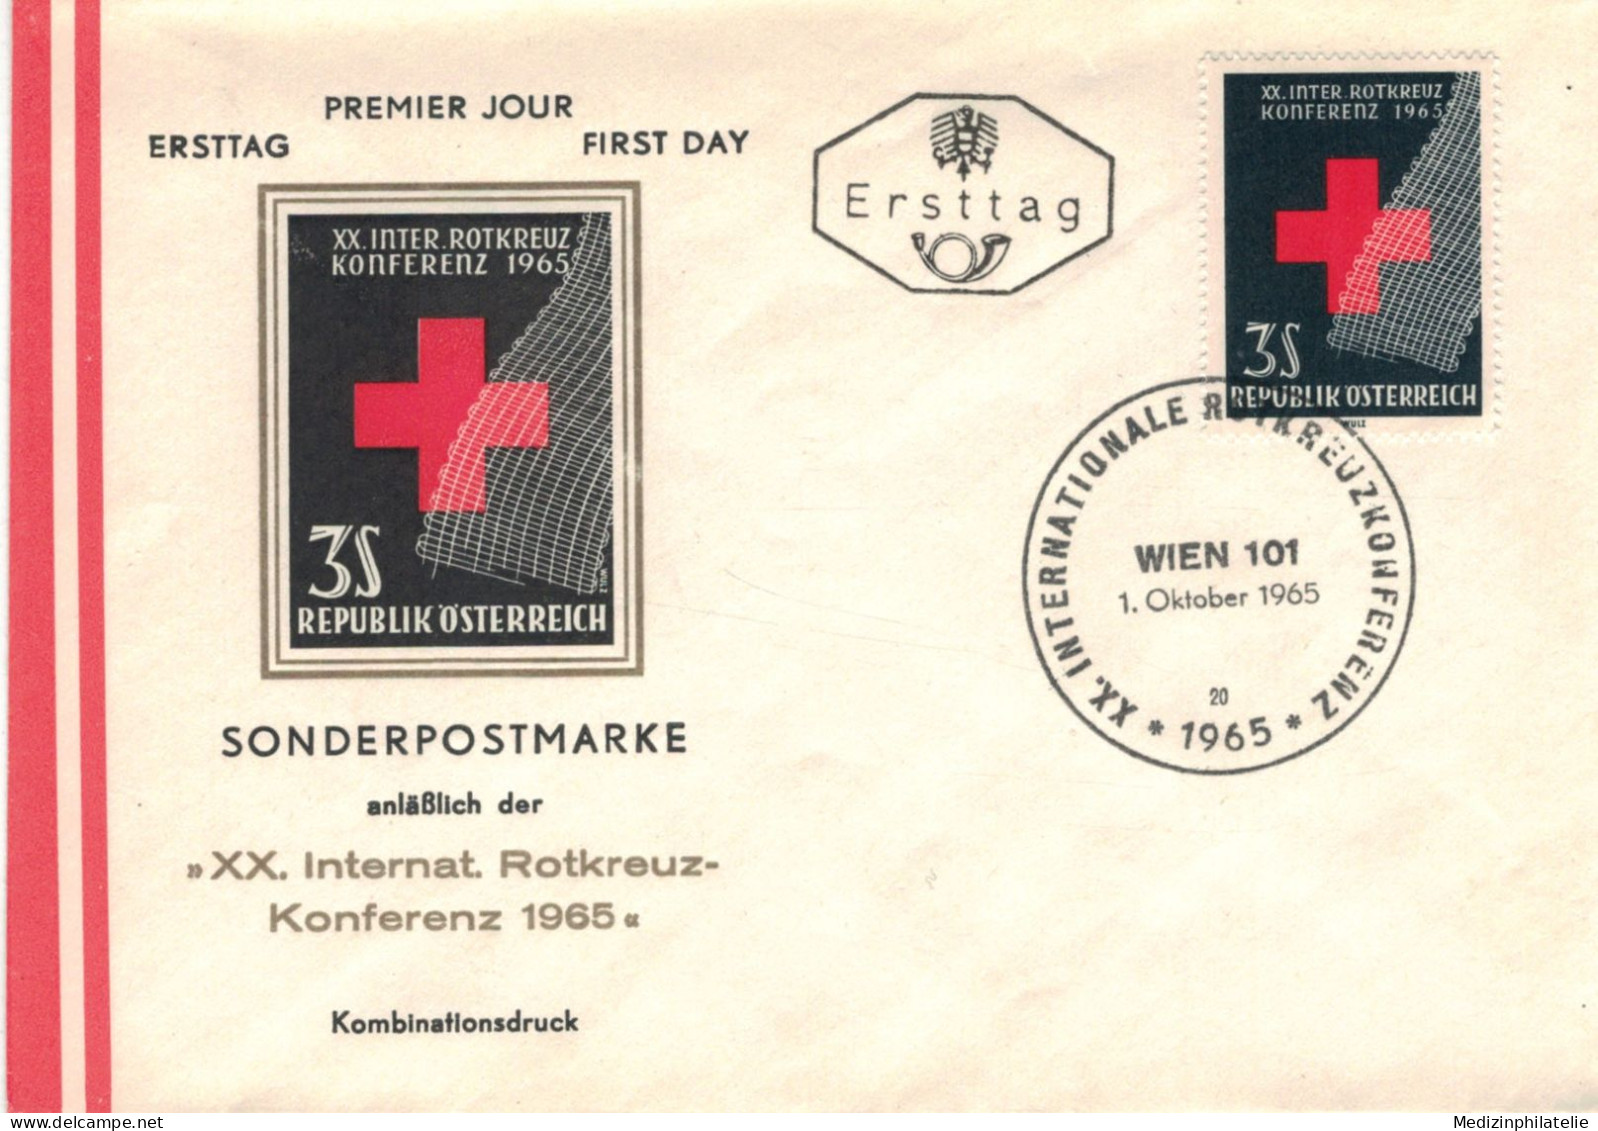 Rotes Kreuz - Wien 1965 - Konferenz - First Aid